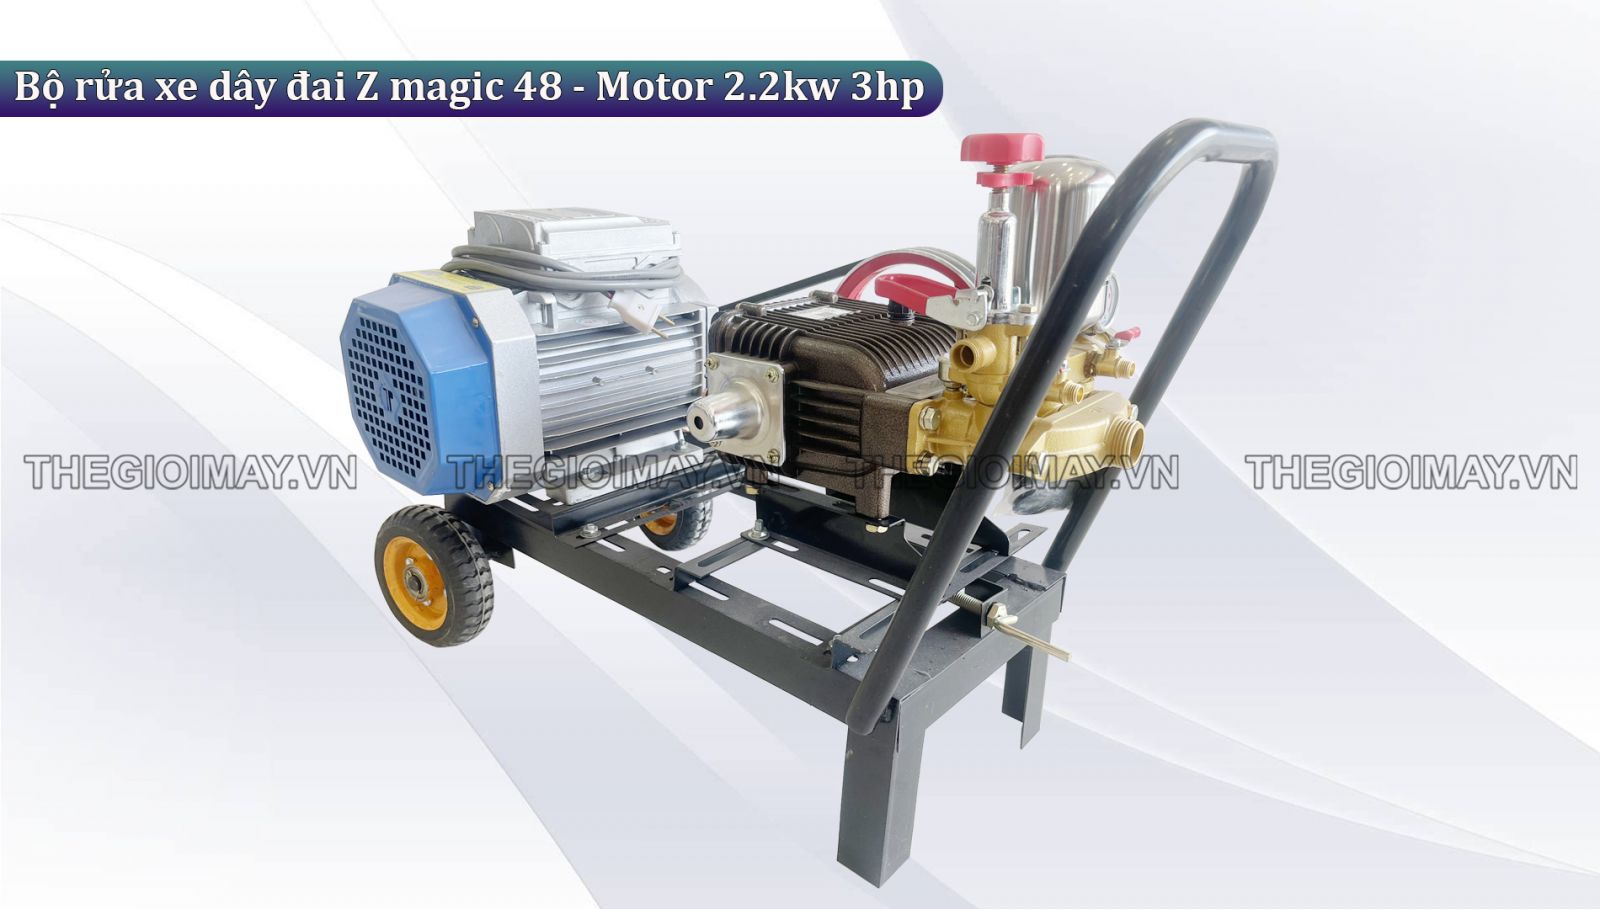 Ứng dụng của bộ rửa xe dây đai Z magic 48 - Motor 2.2kw 3hp trong cuộc sống hằng ngày